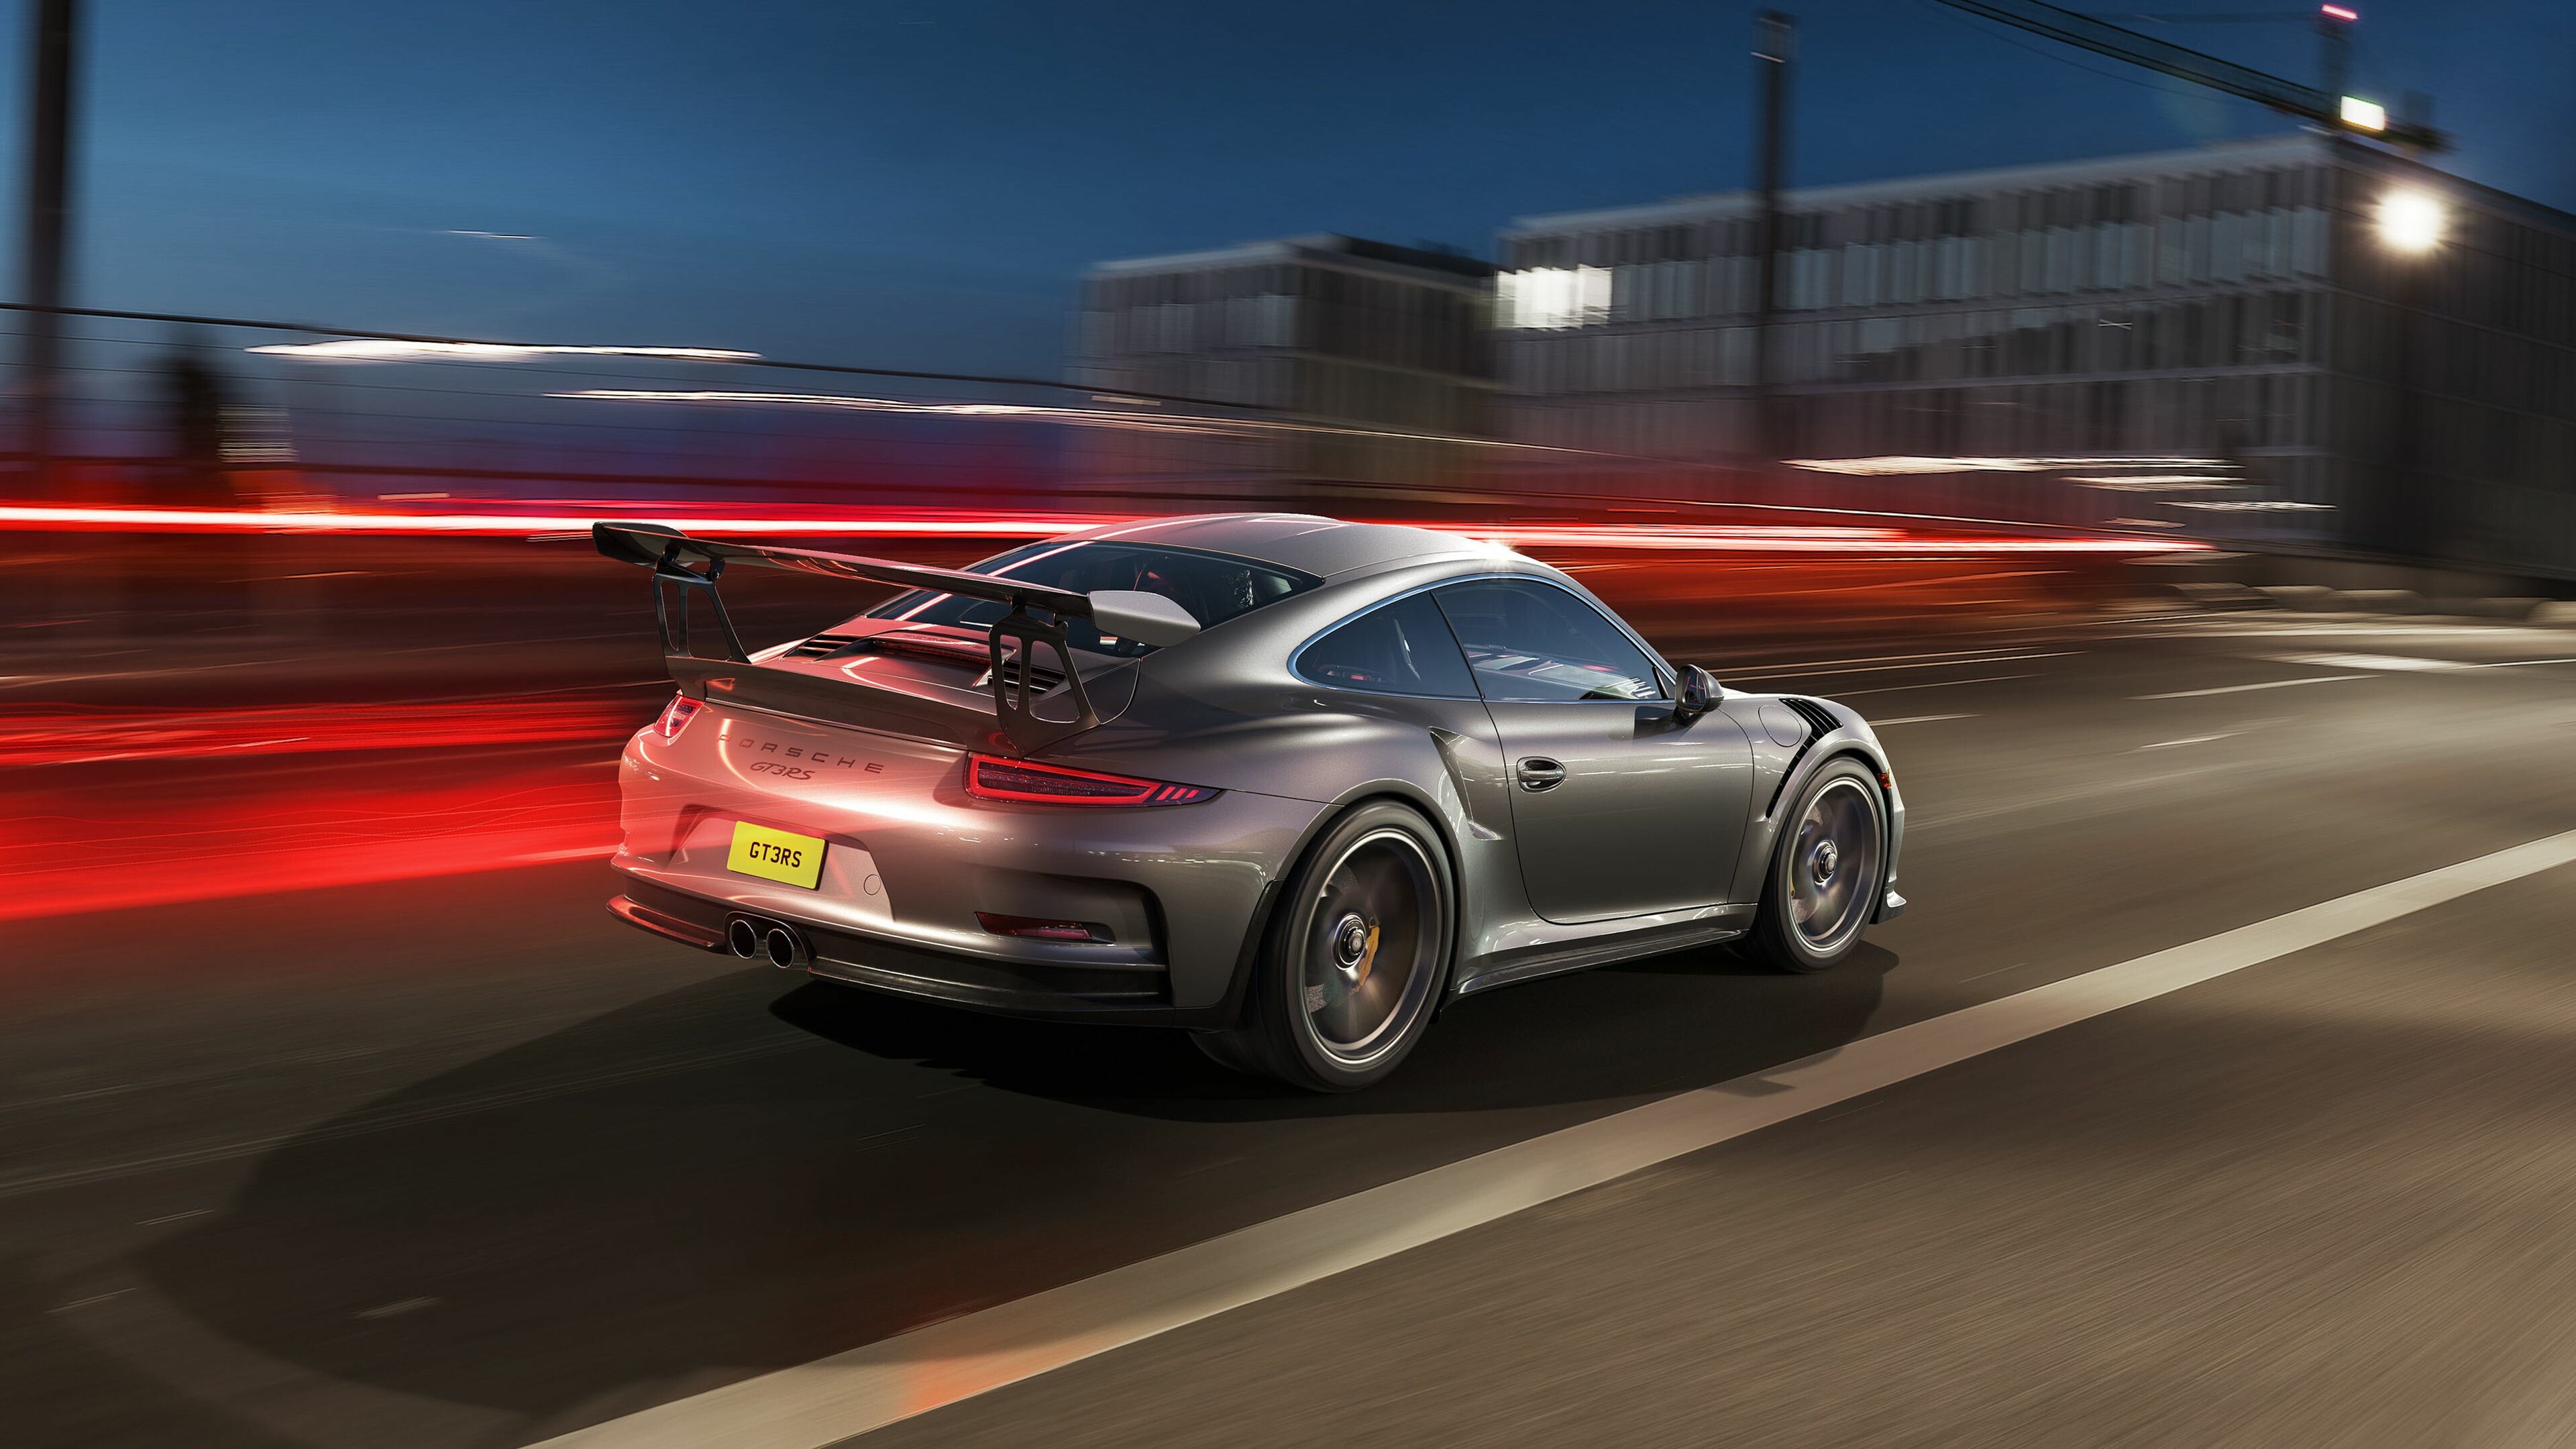 GT3, Porsche GT3 RS, Porsche Hintergrundbilder, HD-Qualitt, 3840x2160 4K Desktop